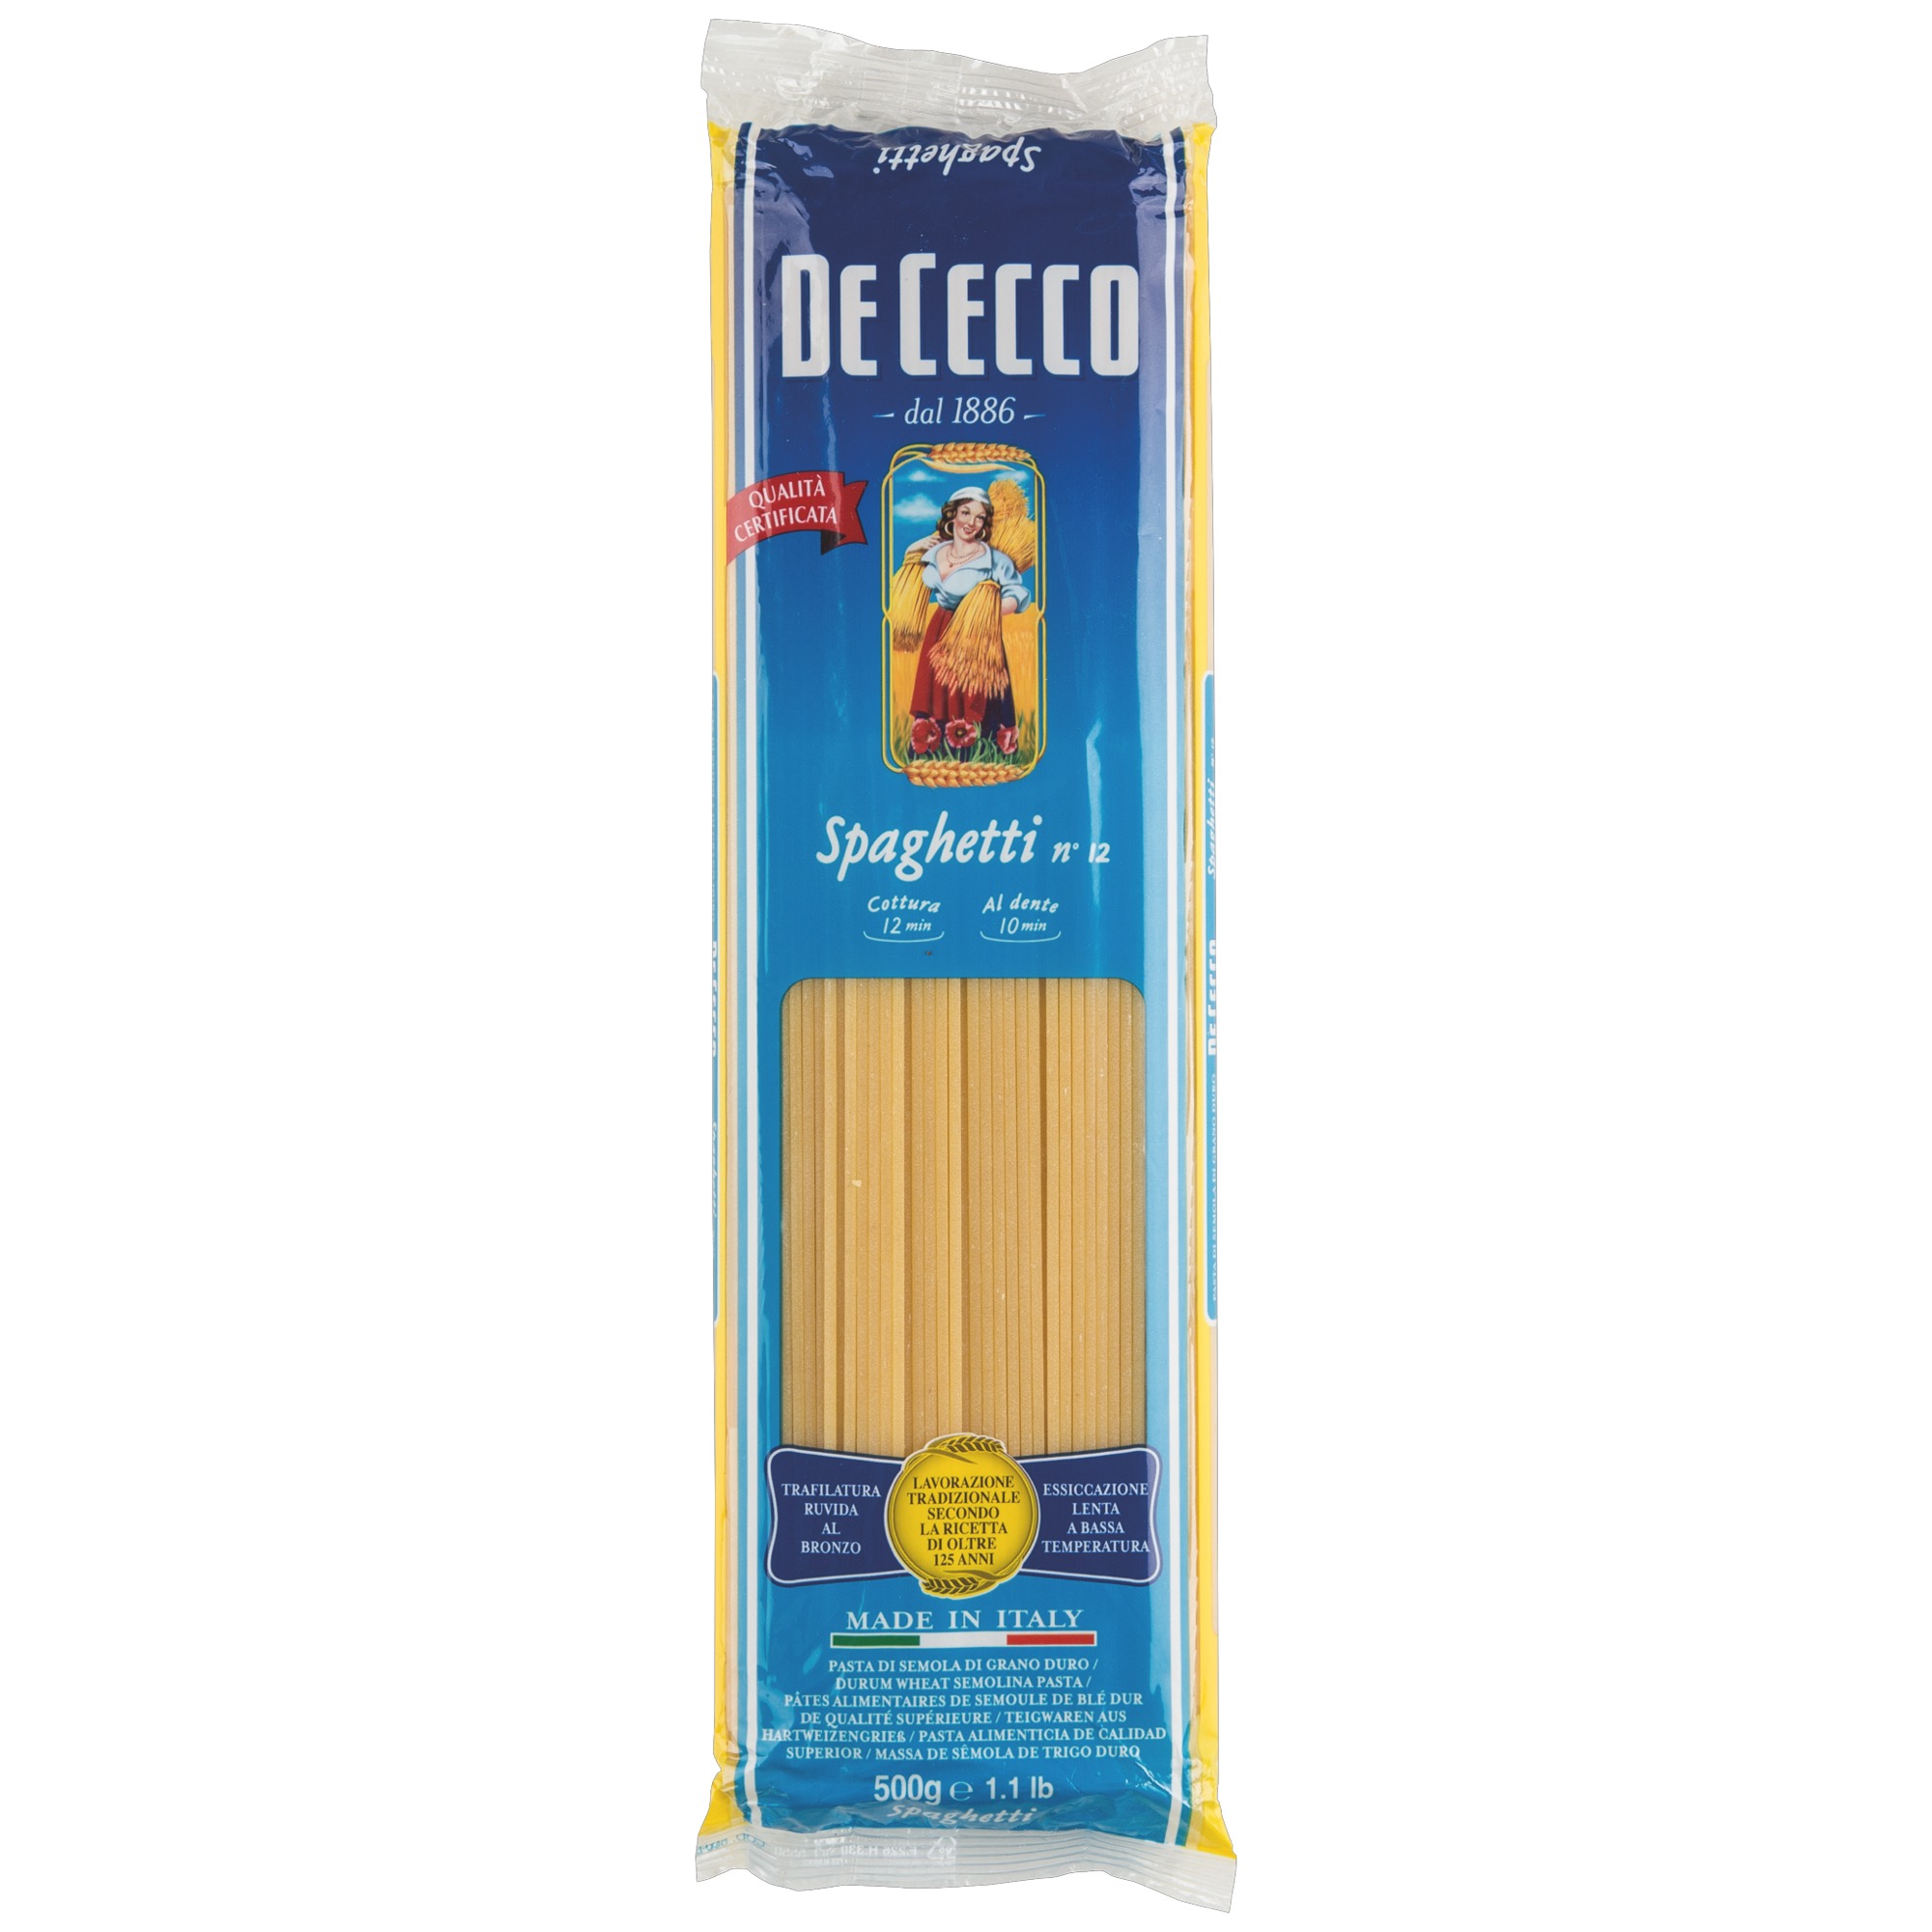 De Cecco 500g, Spaghetti